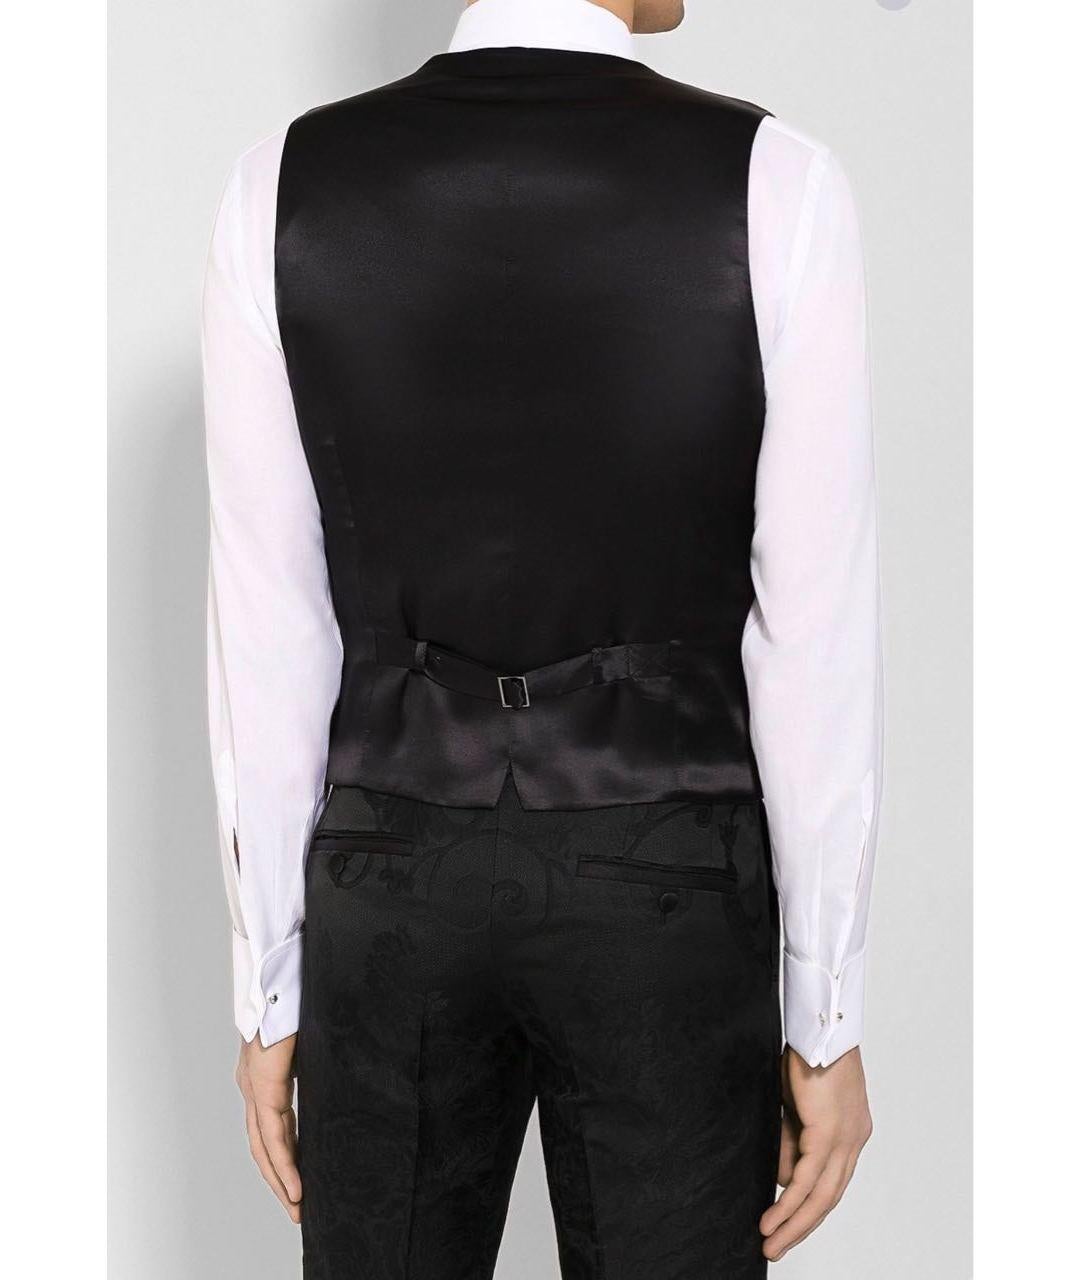 3-pc Dolce & Gabbana Jacquard Suit for Men 1